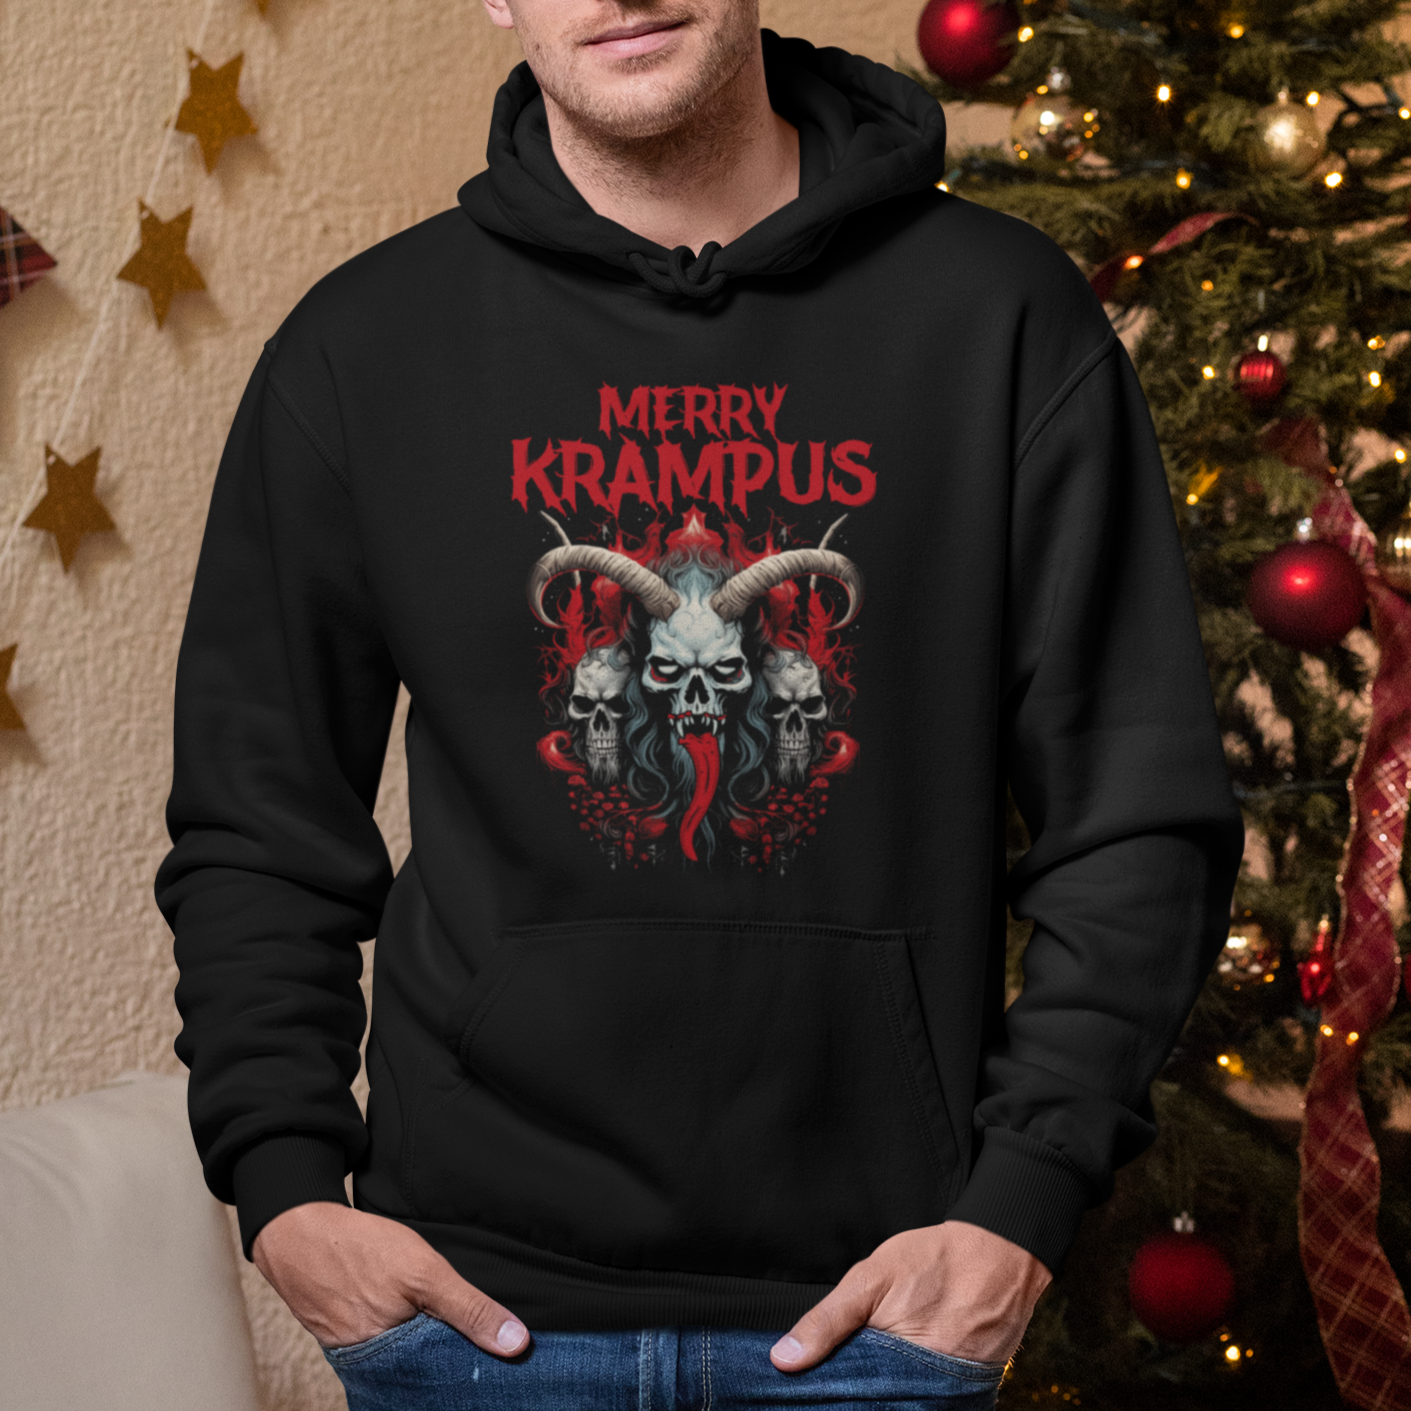 Merry Krampus Horor Christmas Evil Hoodie TS09